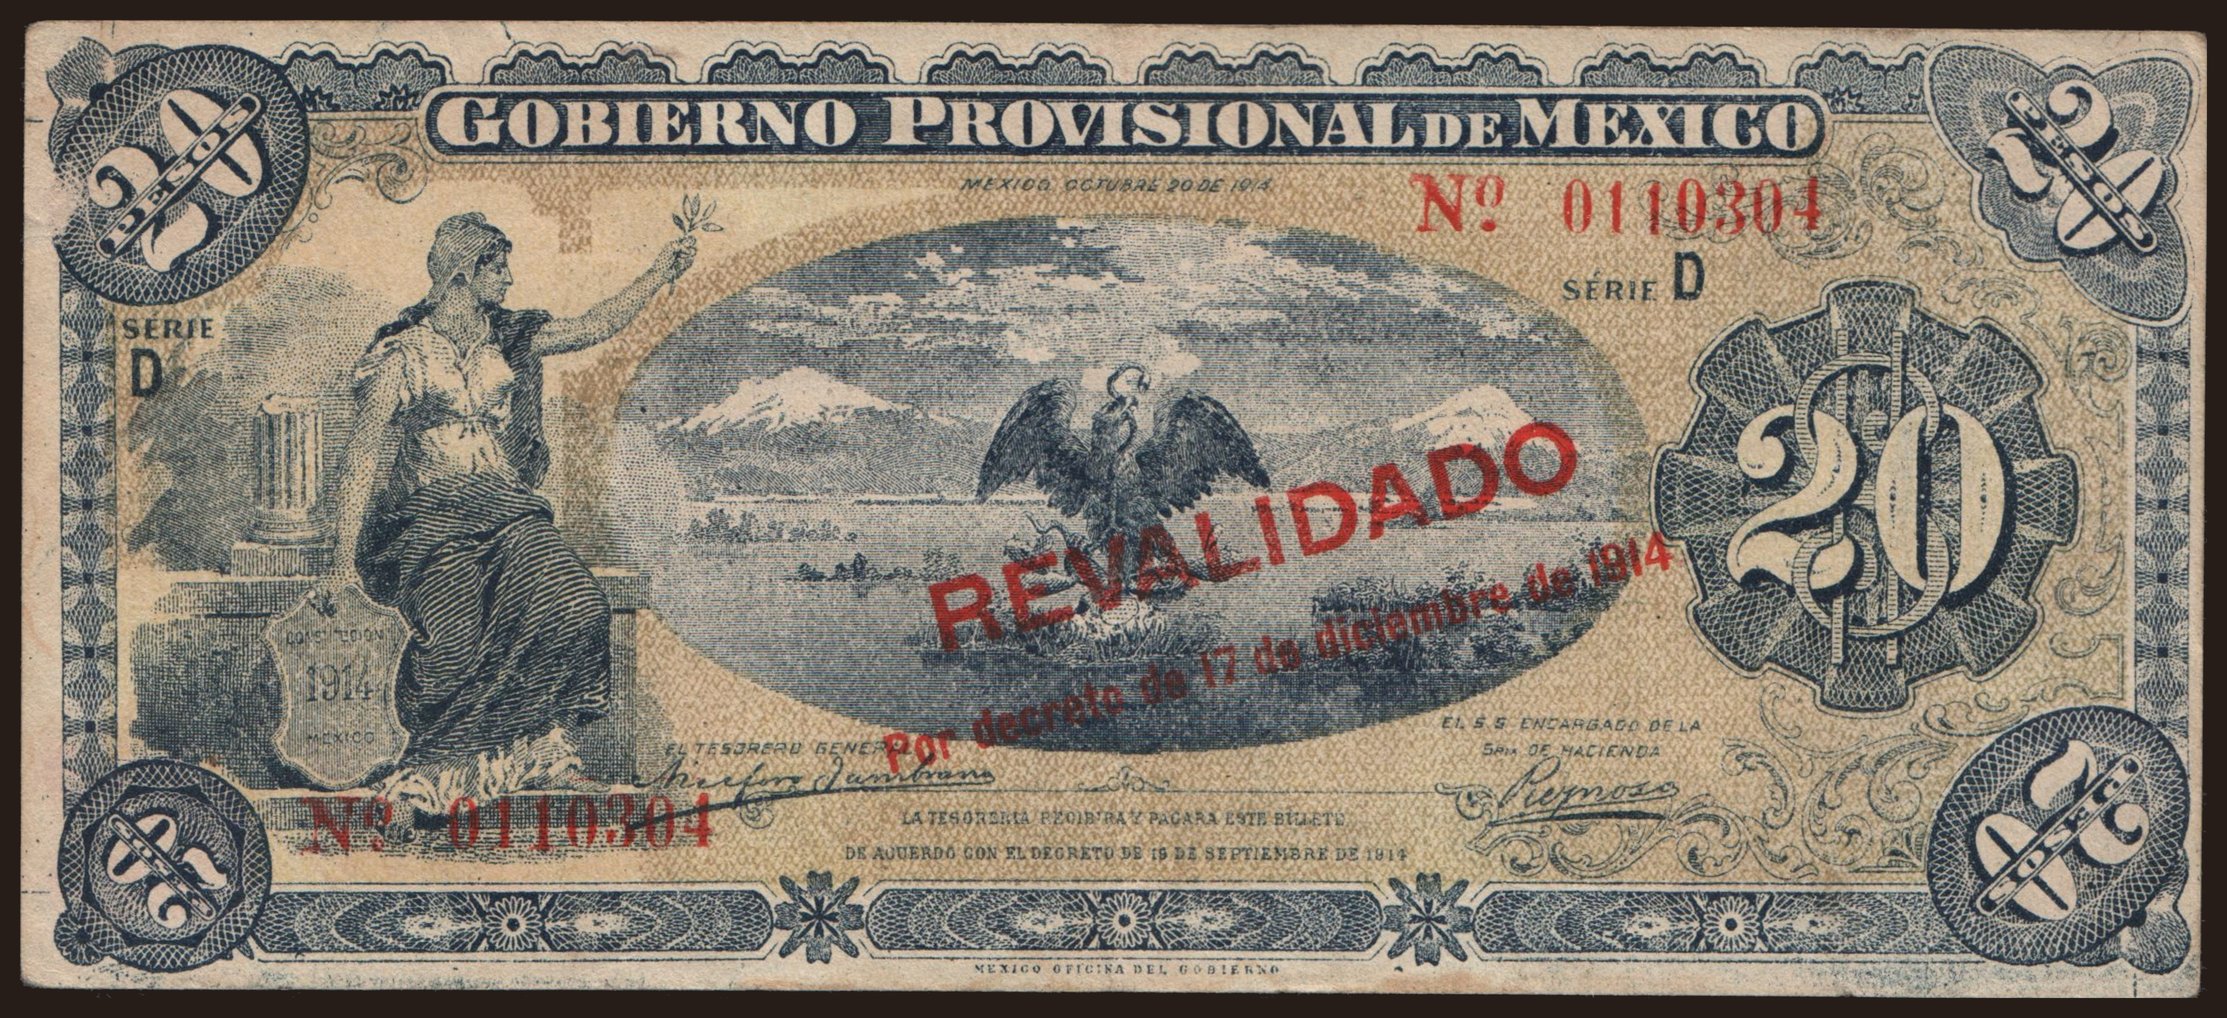 Gobierno Provisional de Mexico, 20 pesos, 1914